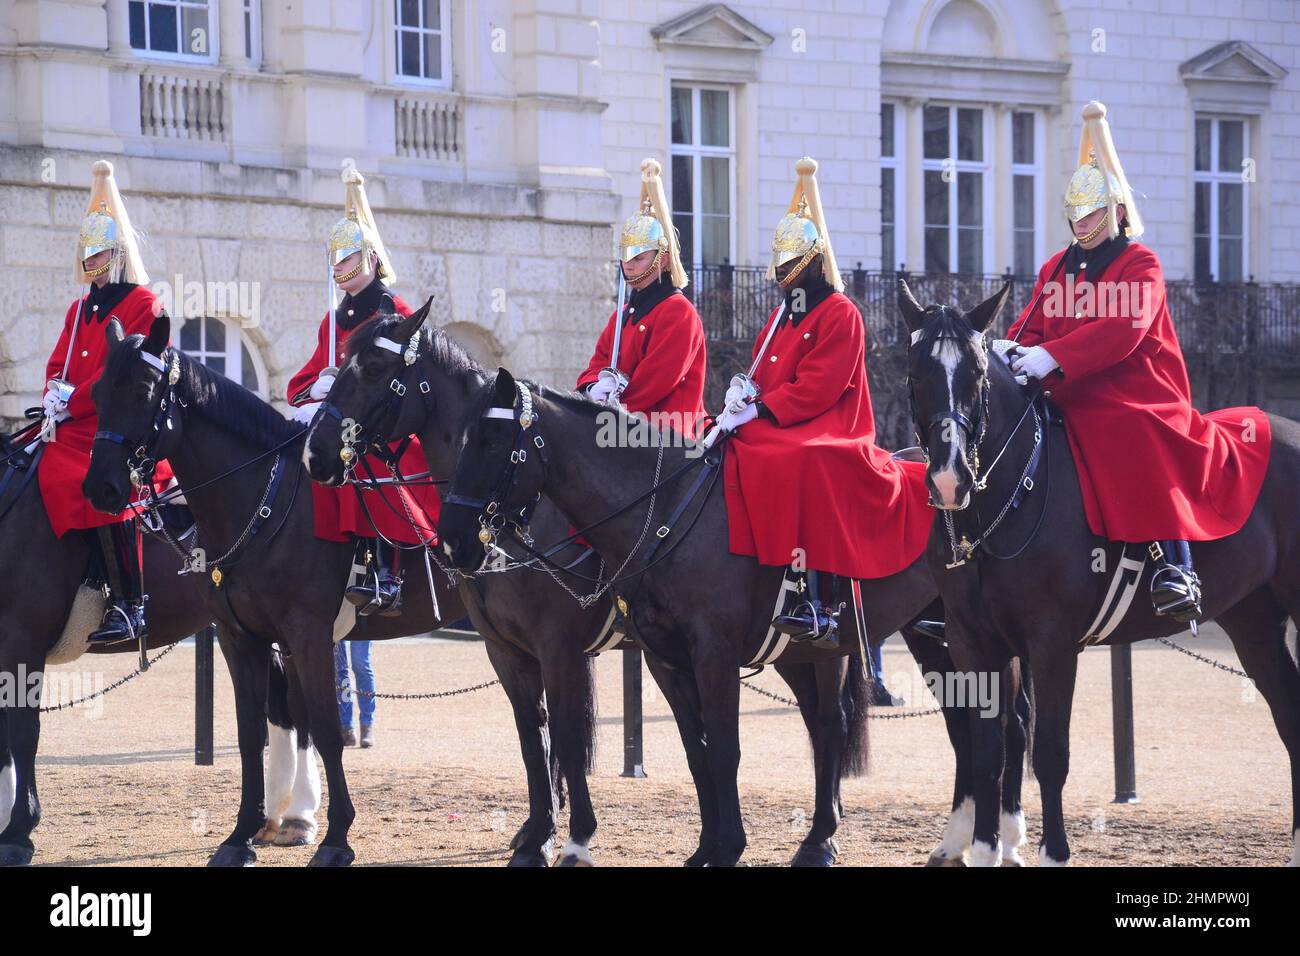 La cérémonie de changement de la Queen's Life Guard sur Horse Guards Parade, à proximité de Whitehall, Londres, Royaume-Uni, îles britanniques. Soldats du régiment de cavalerie de la maison, les gardes de vie, qui portent des tuniques rouges et des casques blancs à plumed. Les gardes de chevaux, nommés d'après les troupes qui ont protégé le souverain depuis la restauration du roi Charles II en 1660, sont aujourd'hui l'entrée officielle du Palais de Buckingham et du Palais Saint-Jacques. Banque D'Images